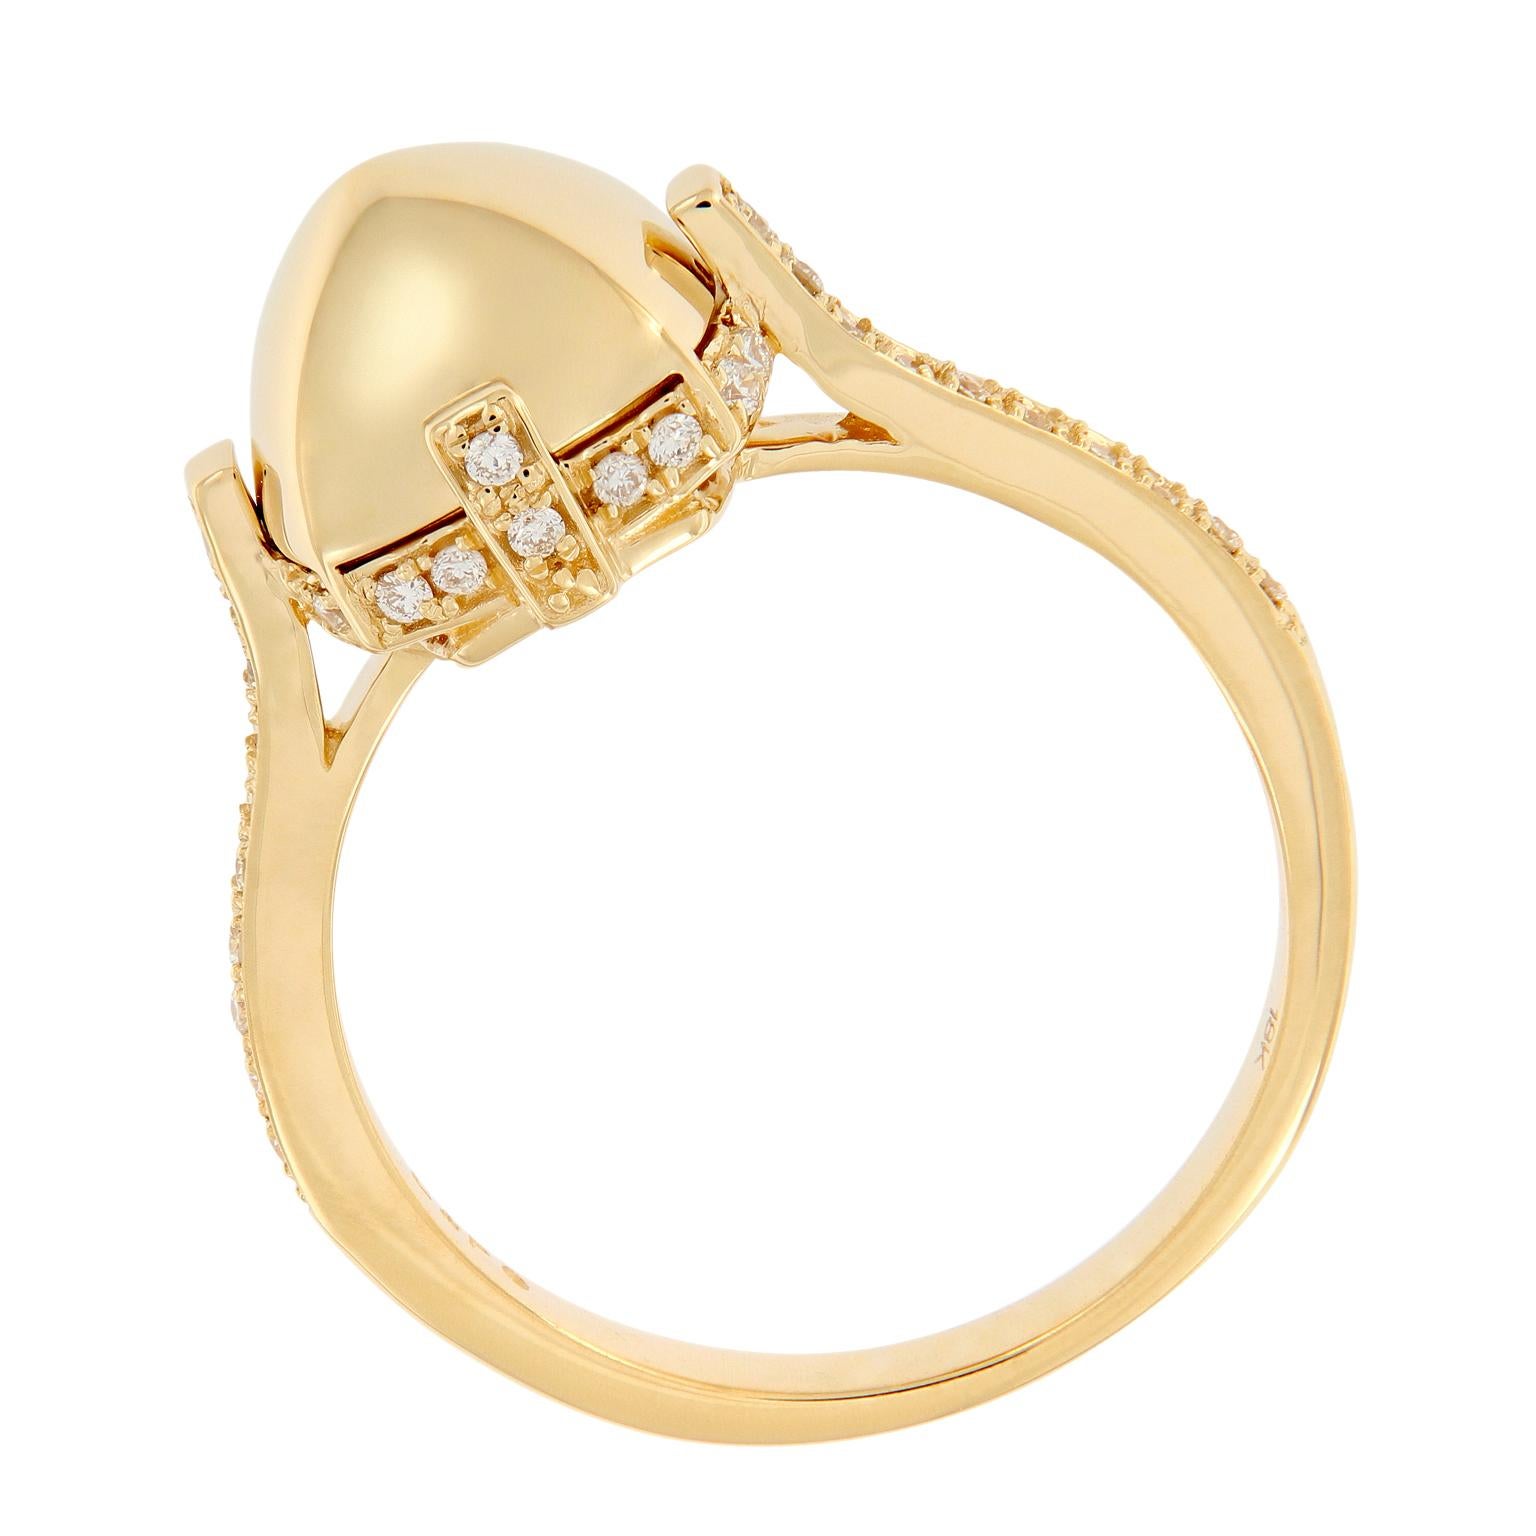 Dieser markante Ring aus 18 Karat Gelbgold in der ikonischen Form eines Surgarloafs ist mit einem Halo aus gepflasterten Diamanten und einem diamantbesetzten Band verziert. Ringgröße 6.75. Die Oberseite des Rings misst 11 mm x 11 mm.